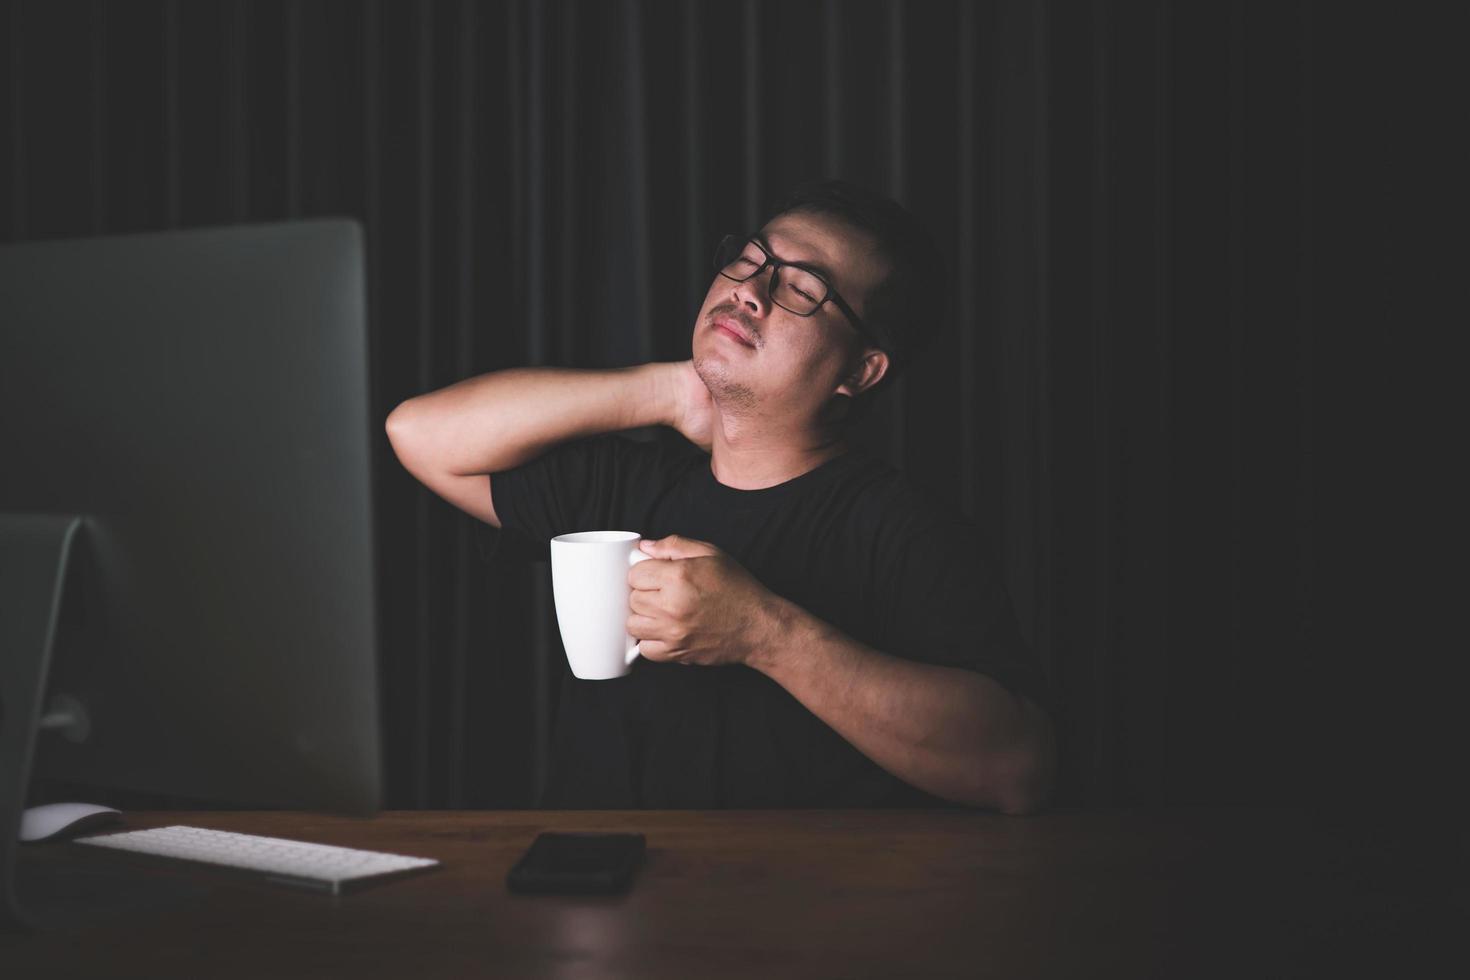 Nackenschmerzen oder müdes Konzept. mann, der seinen hals berührt, weil er nach langer arbeit am computer im dunklen raum zu hause schmerzen oder schmerzen hat foto